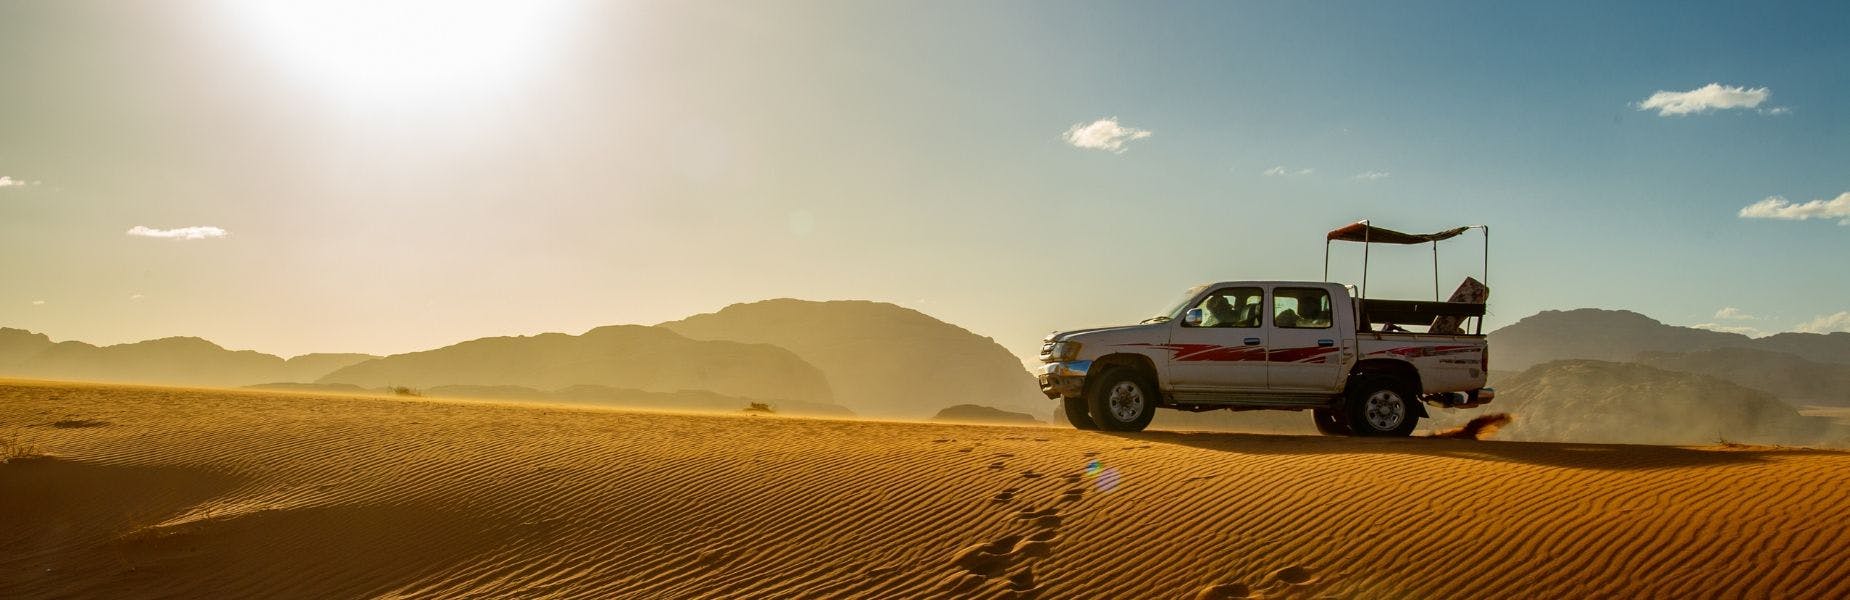 Auto op een zandduin in de woestijn met berglandschap op de achtergrond